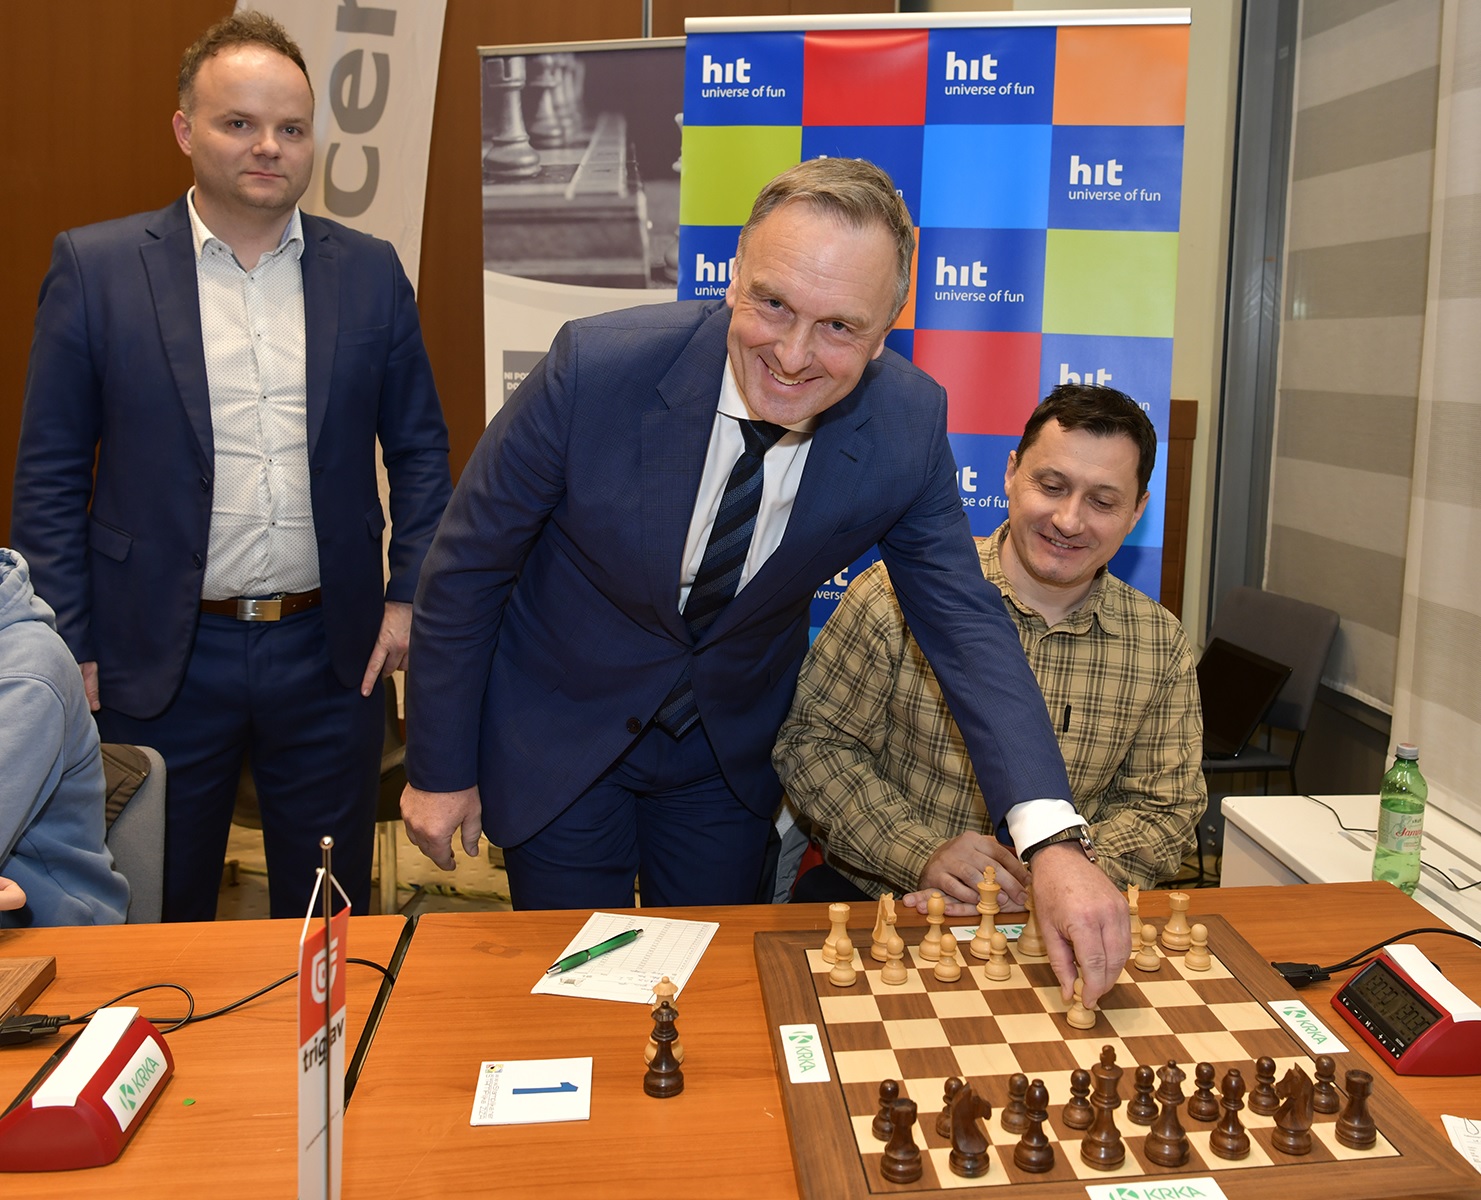 Inizia il torneo di scacchi a Nova Gorica, vetrine e una torta speciale a tema